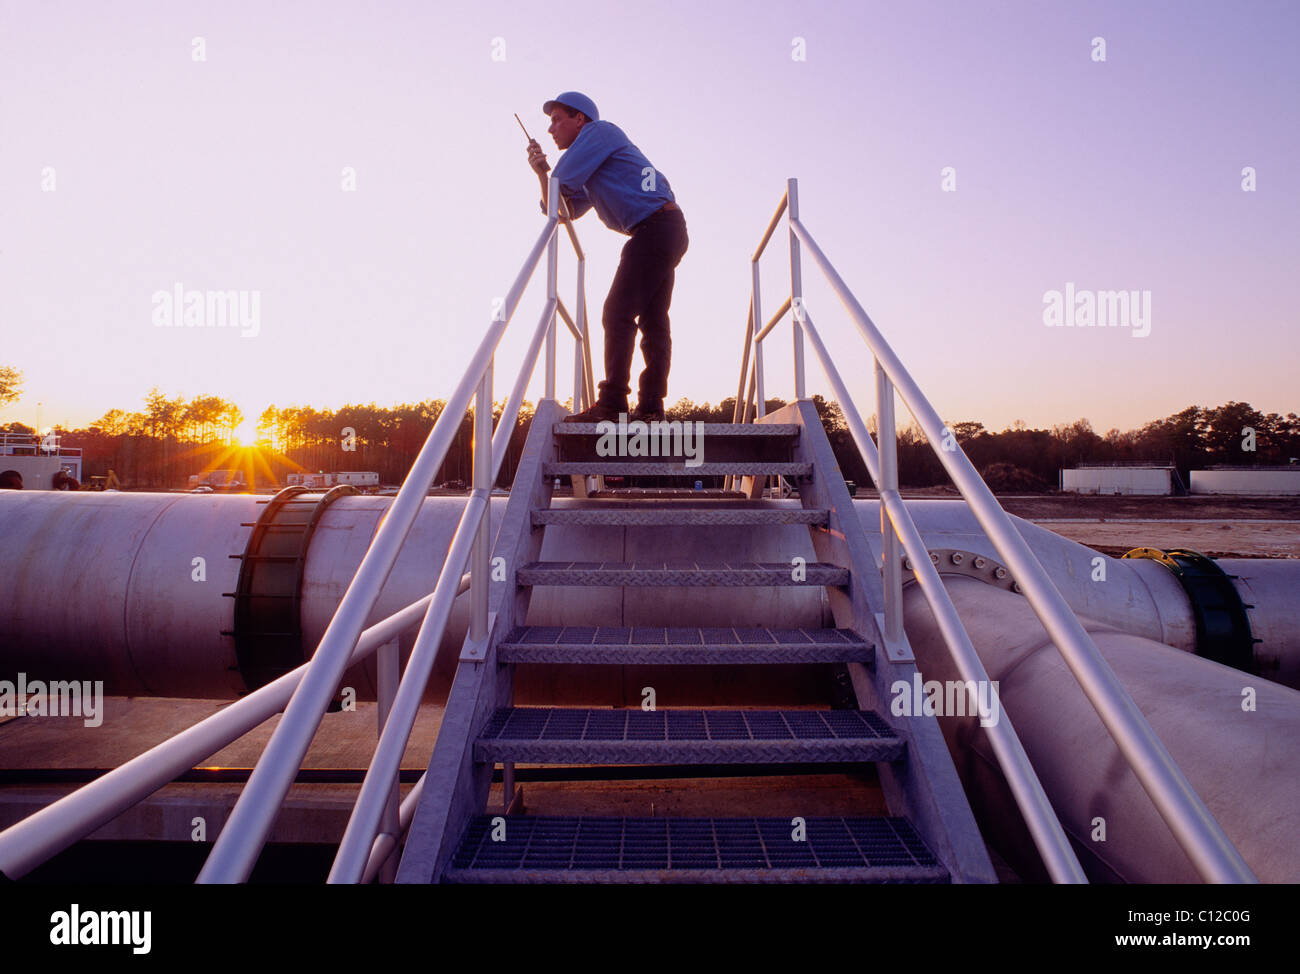 Ingenieur auf ein Walkie Talkie Funkgerät bei Sonnenuntergang auf einer Kläranlage, Houston, Texas, USA Stockfoto